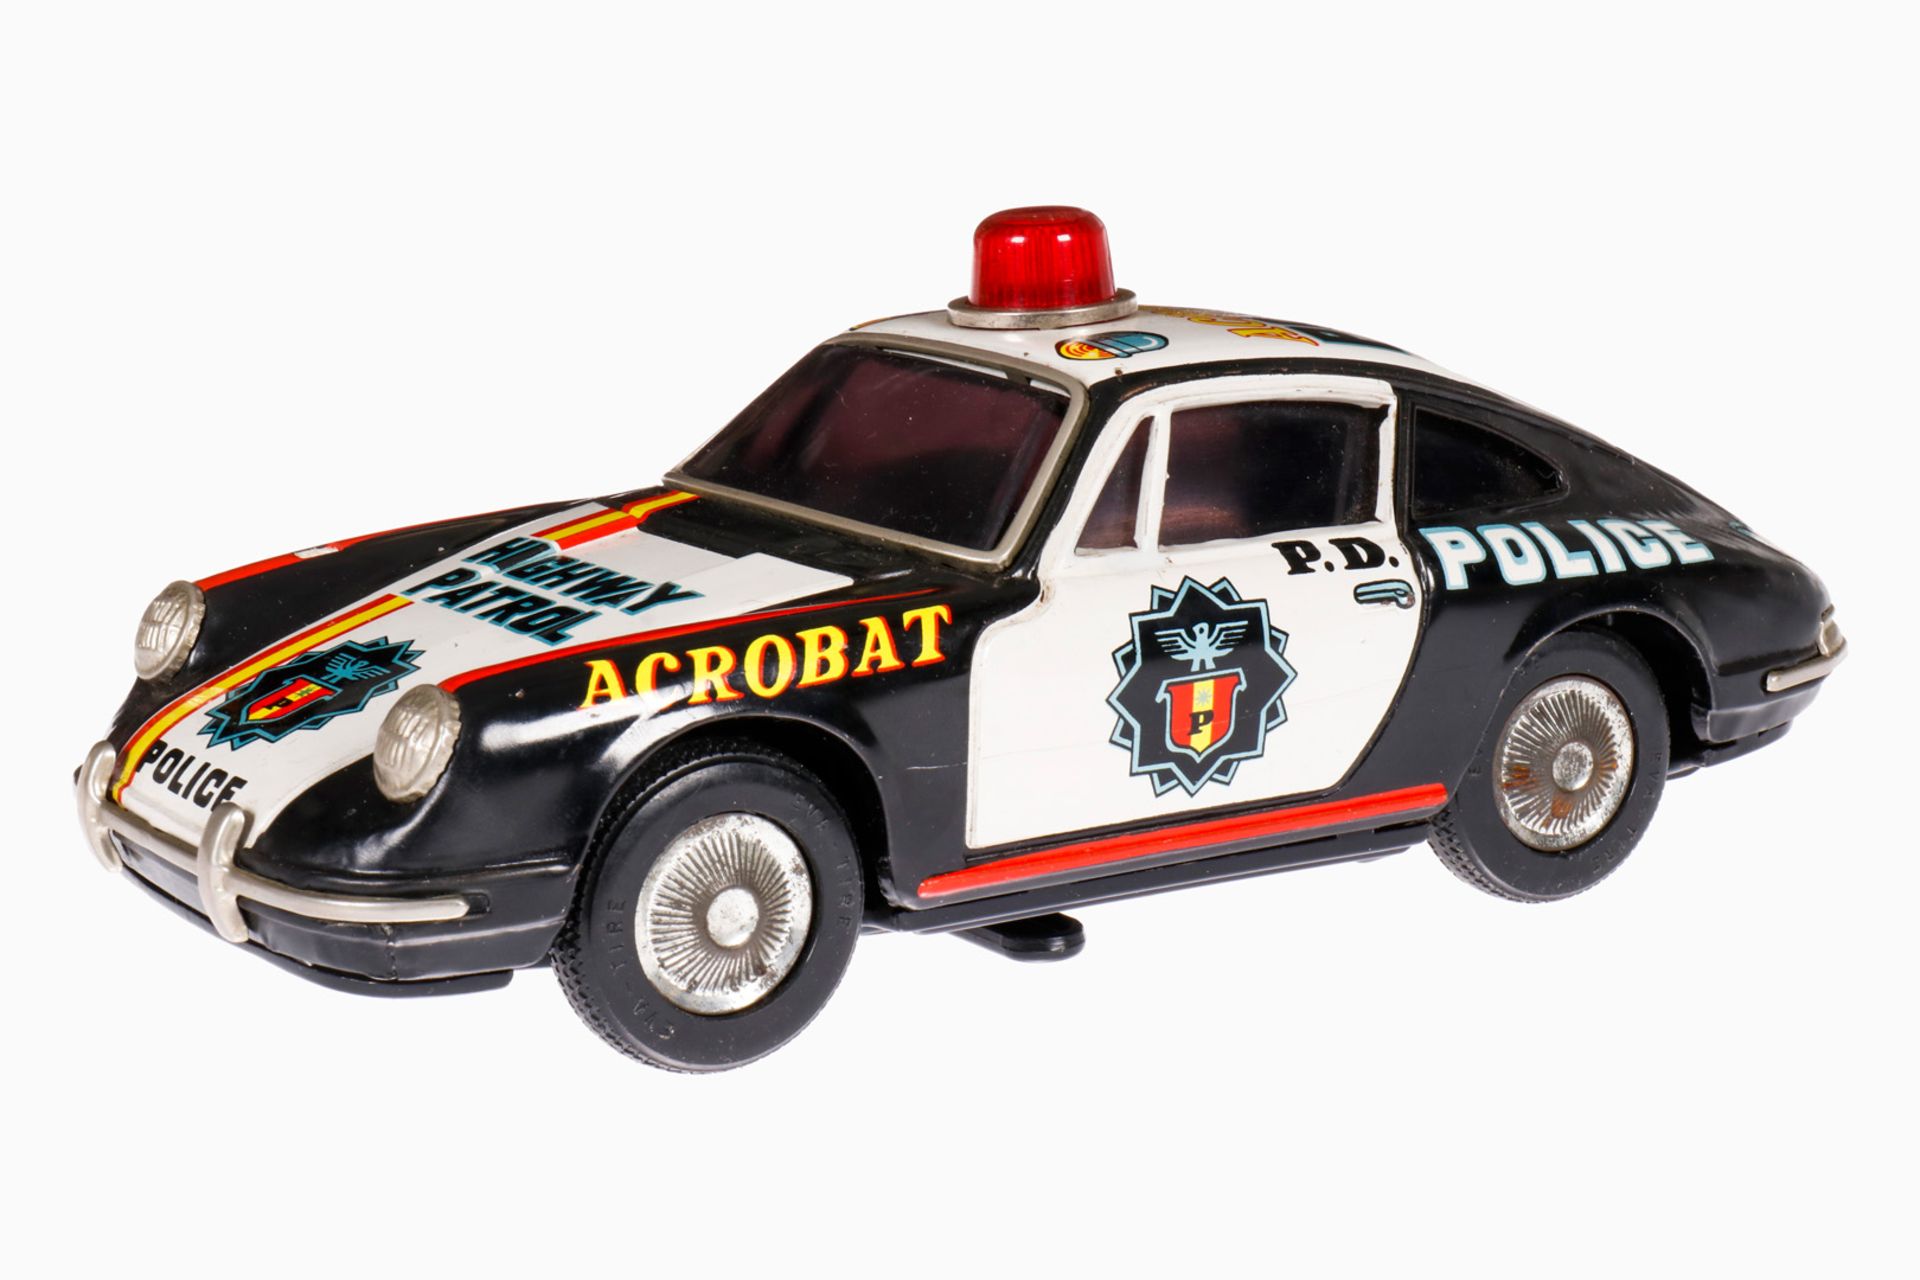 TPS Polizei Porsche ”T-0978”, Japan, Blech, batteriebetrieben, leichte Alterungsspuren, L 25, Z 2